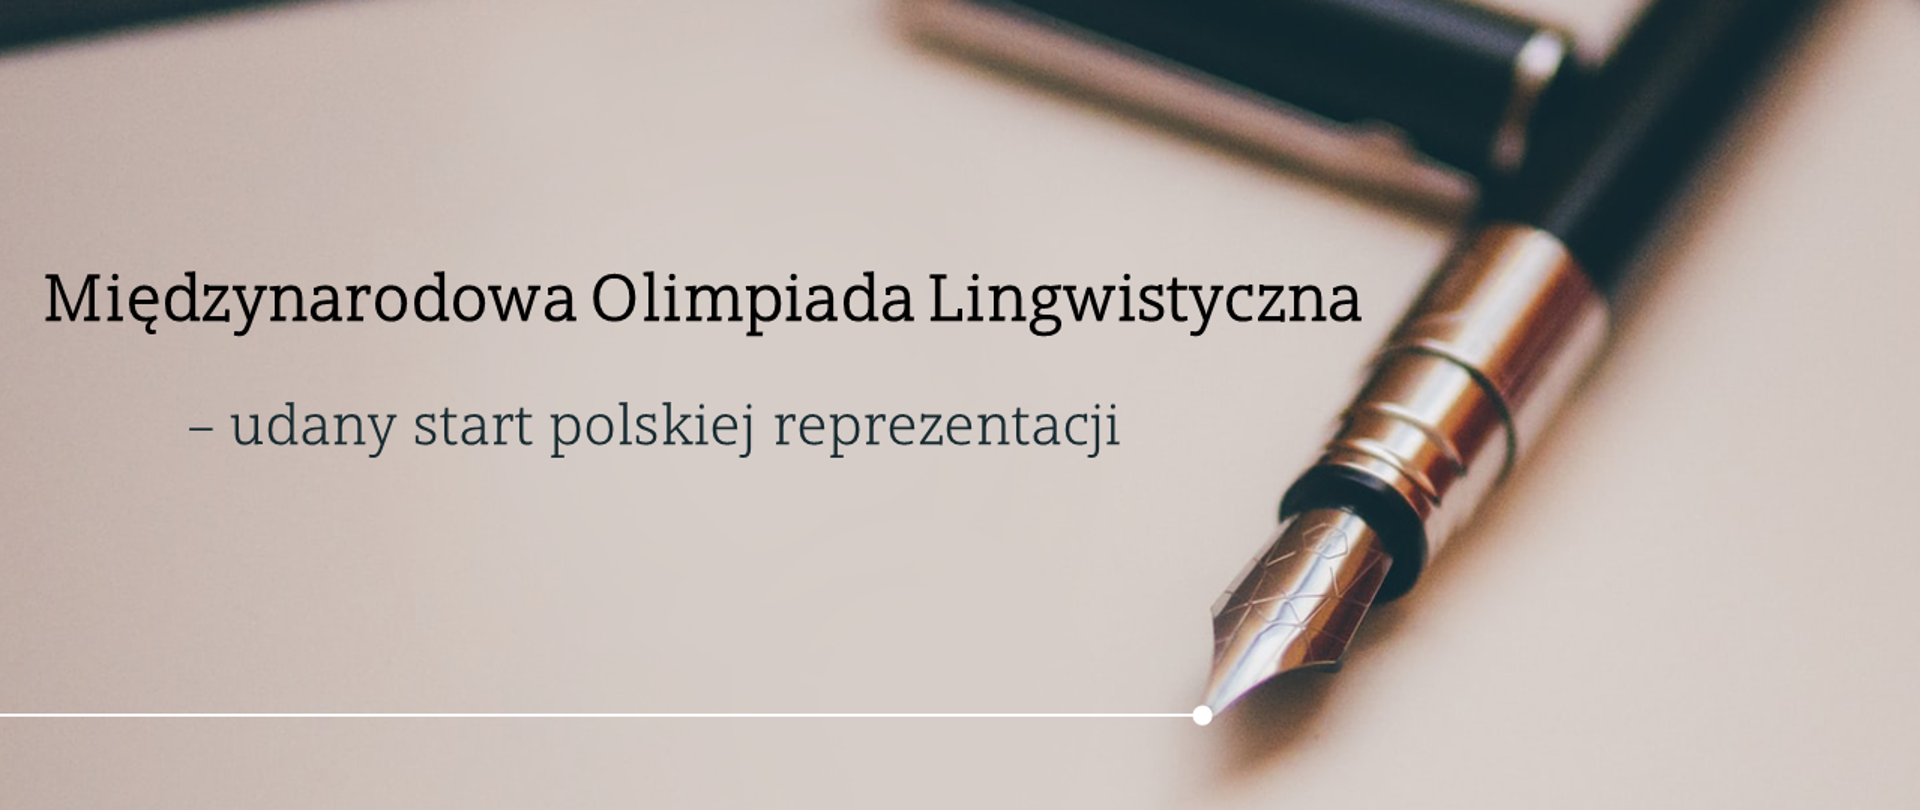 Międzynarodowa Olimpiada Lingwistyczna – udany start polskiej reprezentacji - grafika, napis na środku Międzynarodowa Olimpiada Lingwistyczna – udany start polskiej reprezentacji.